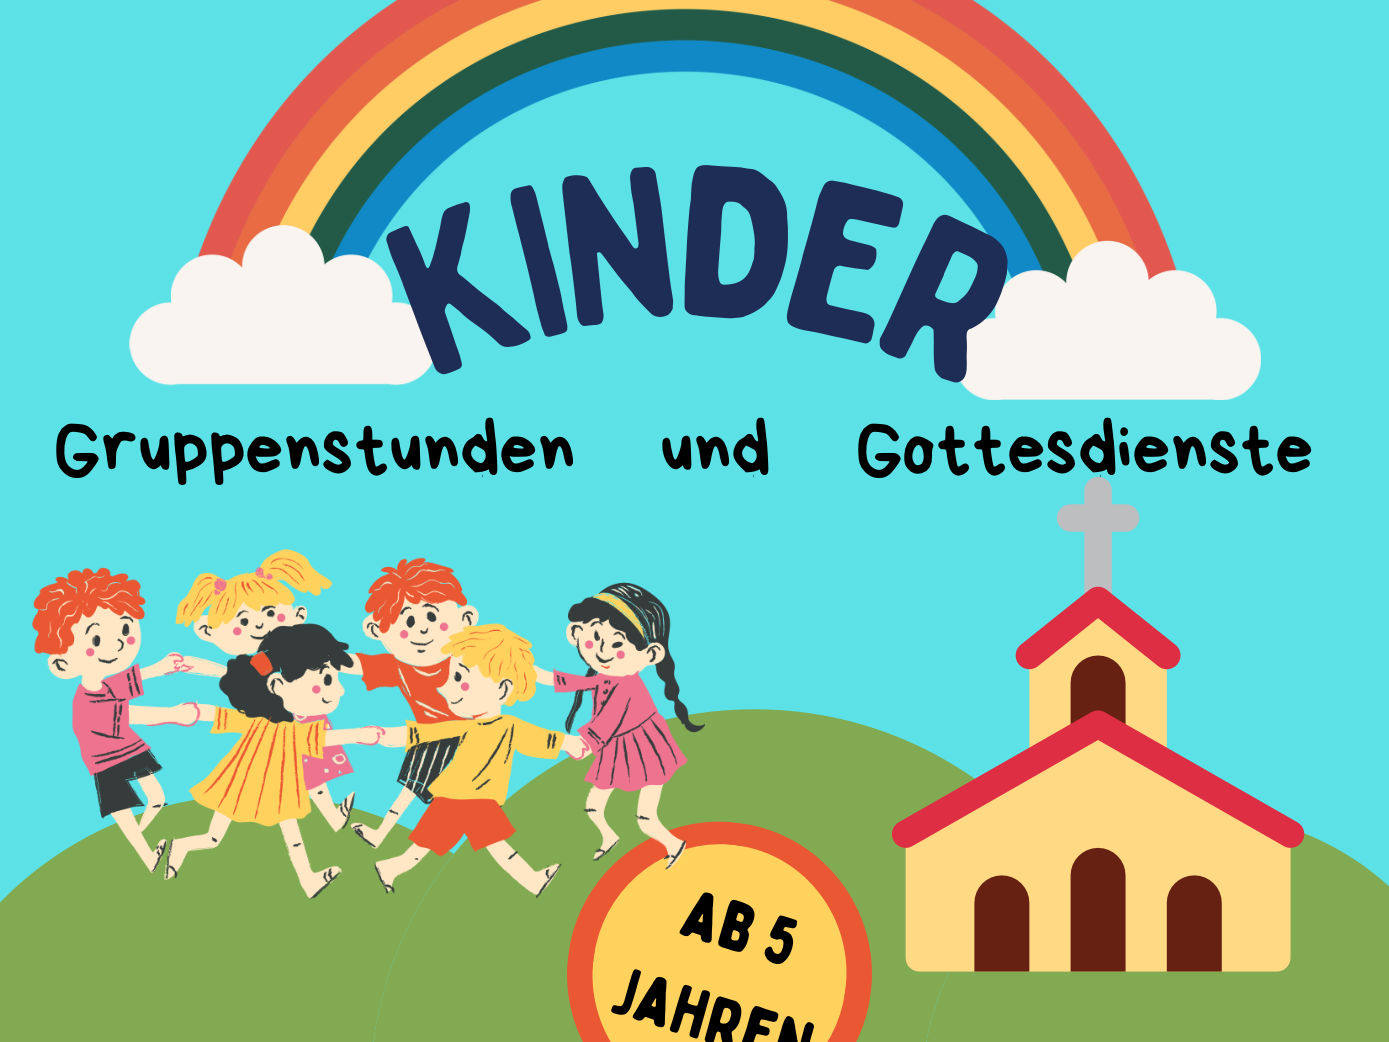 Ein Jahr voller Freude und Gemeinschaft: Kinder-Gruppenstunden und Gottesdienste in Seßlach feiert Jubiläum